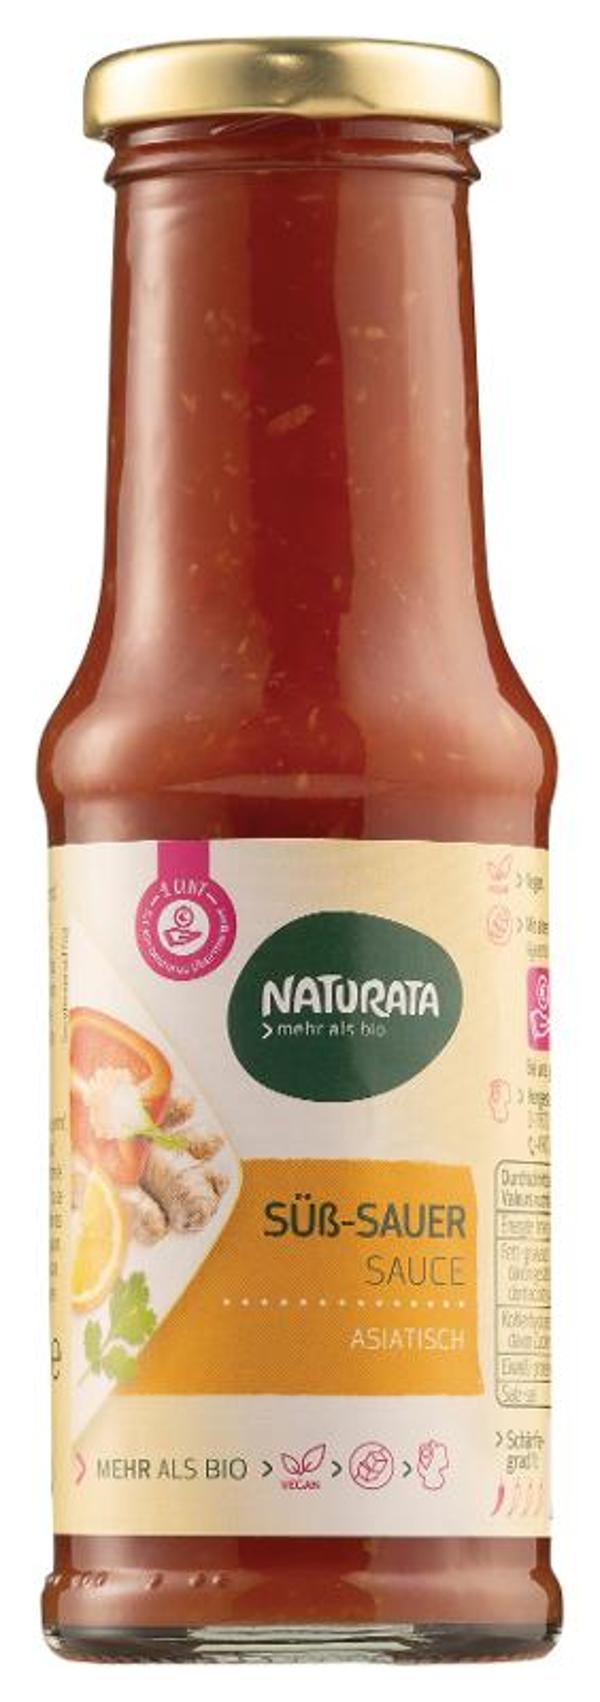 Produktfoto zu Süß Sauer Sauce von Naturata